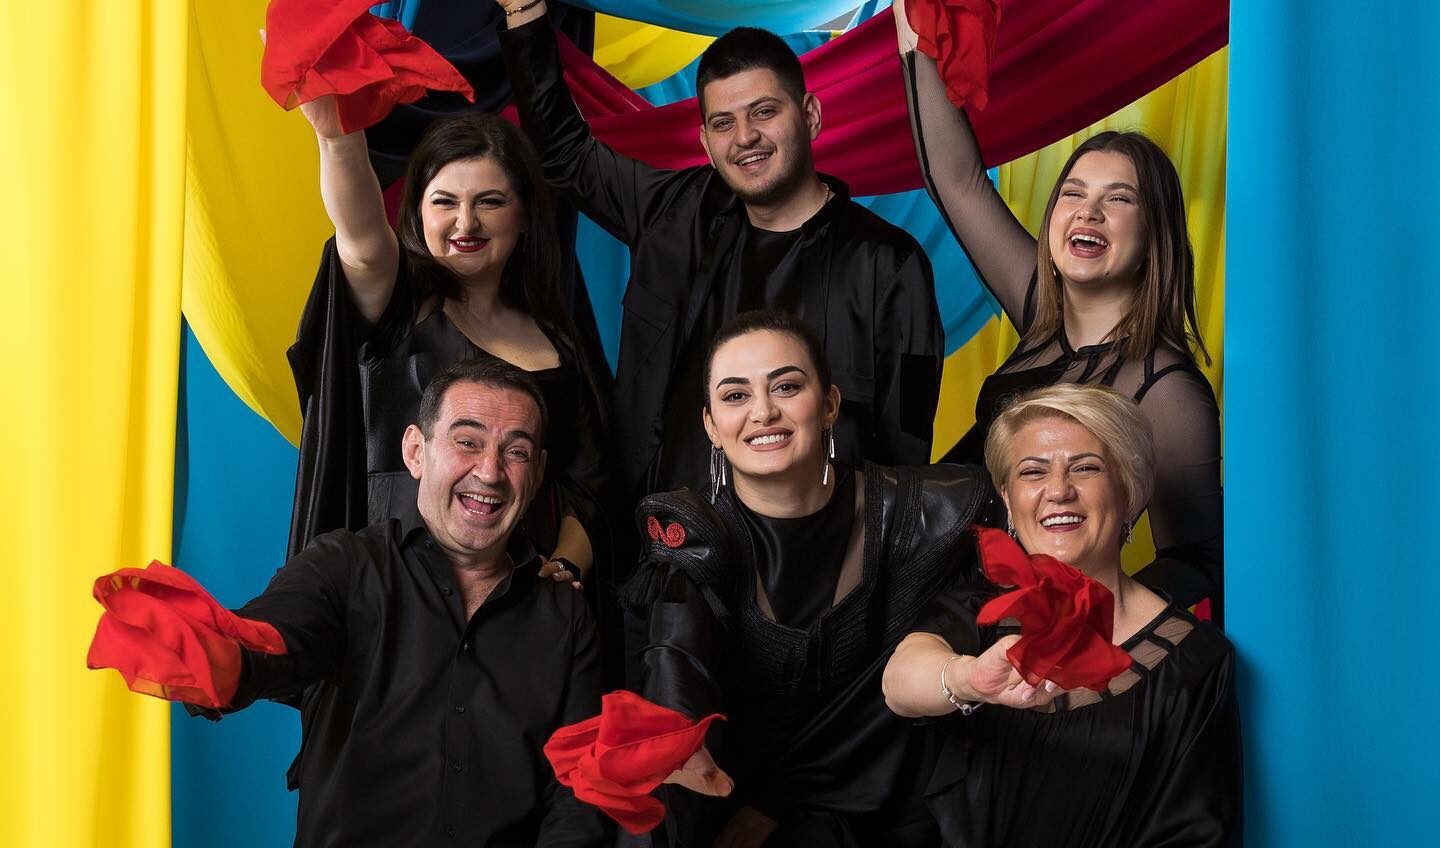 Përfaqësuesit e Shqipërisë në Eurovizion 2023, Albina dhe familja Kelmendi. Foto: Faqja Zyrtare e Eurovizionit (Facebook).